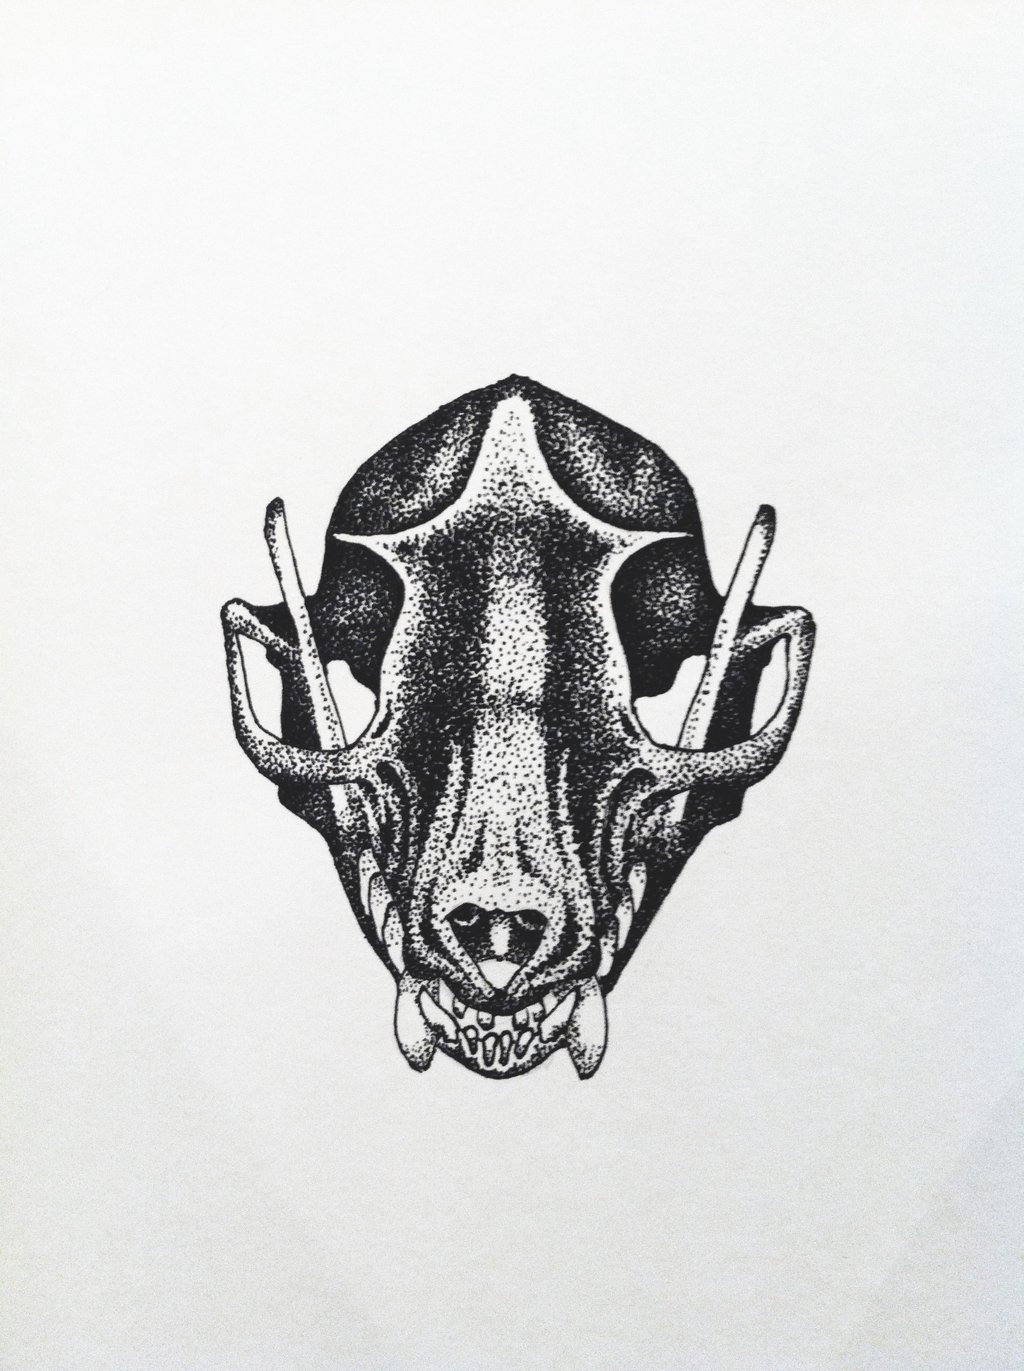 Egyptian fruit bat skull by lalobasolitaria on DeviantArt